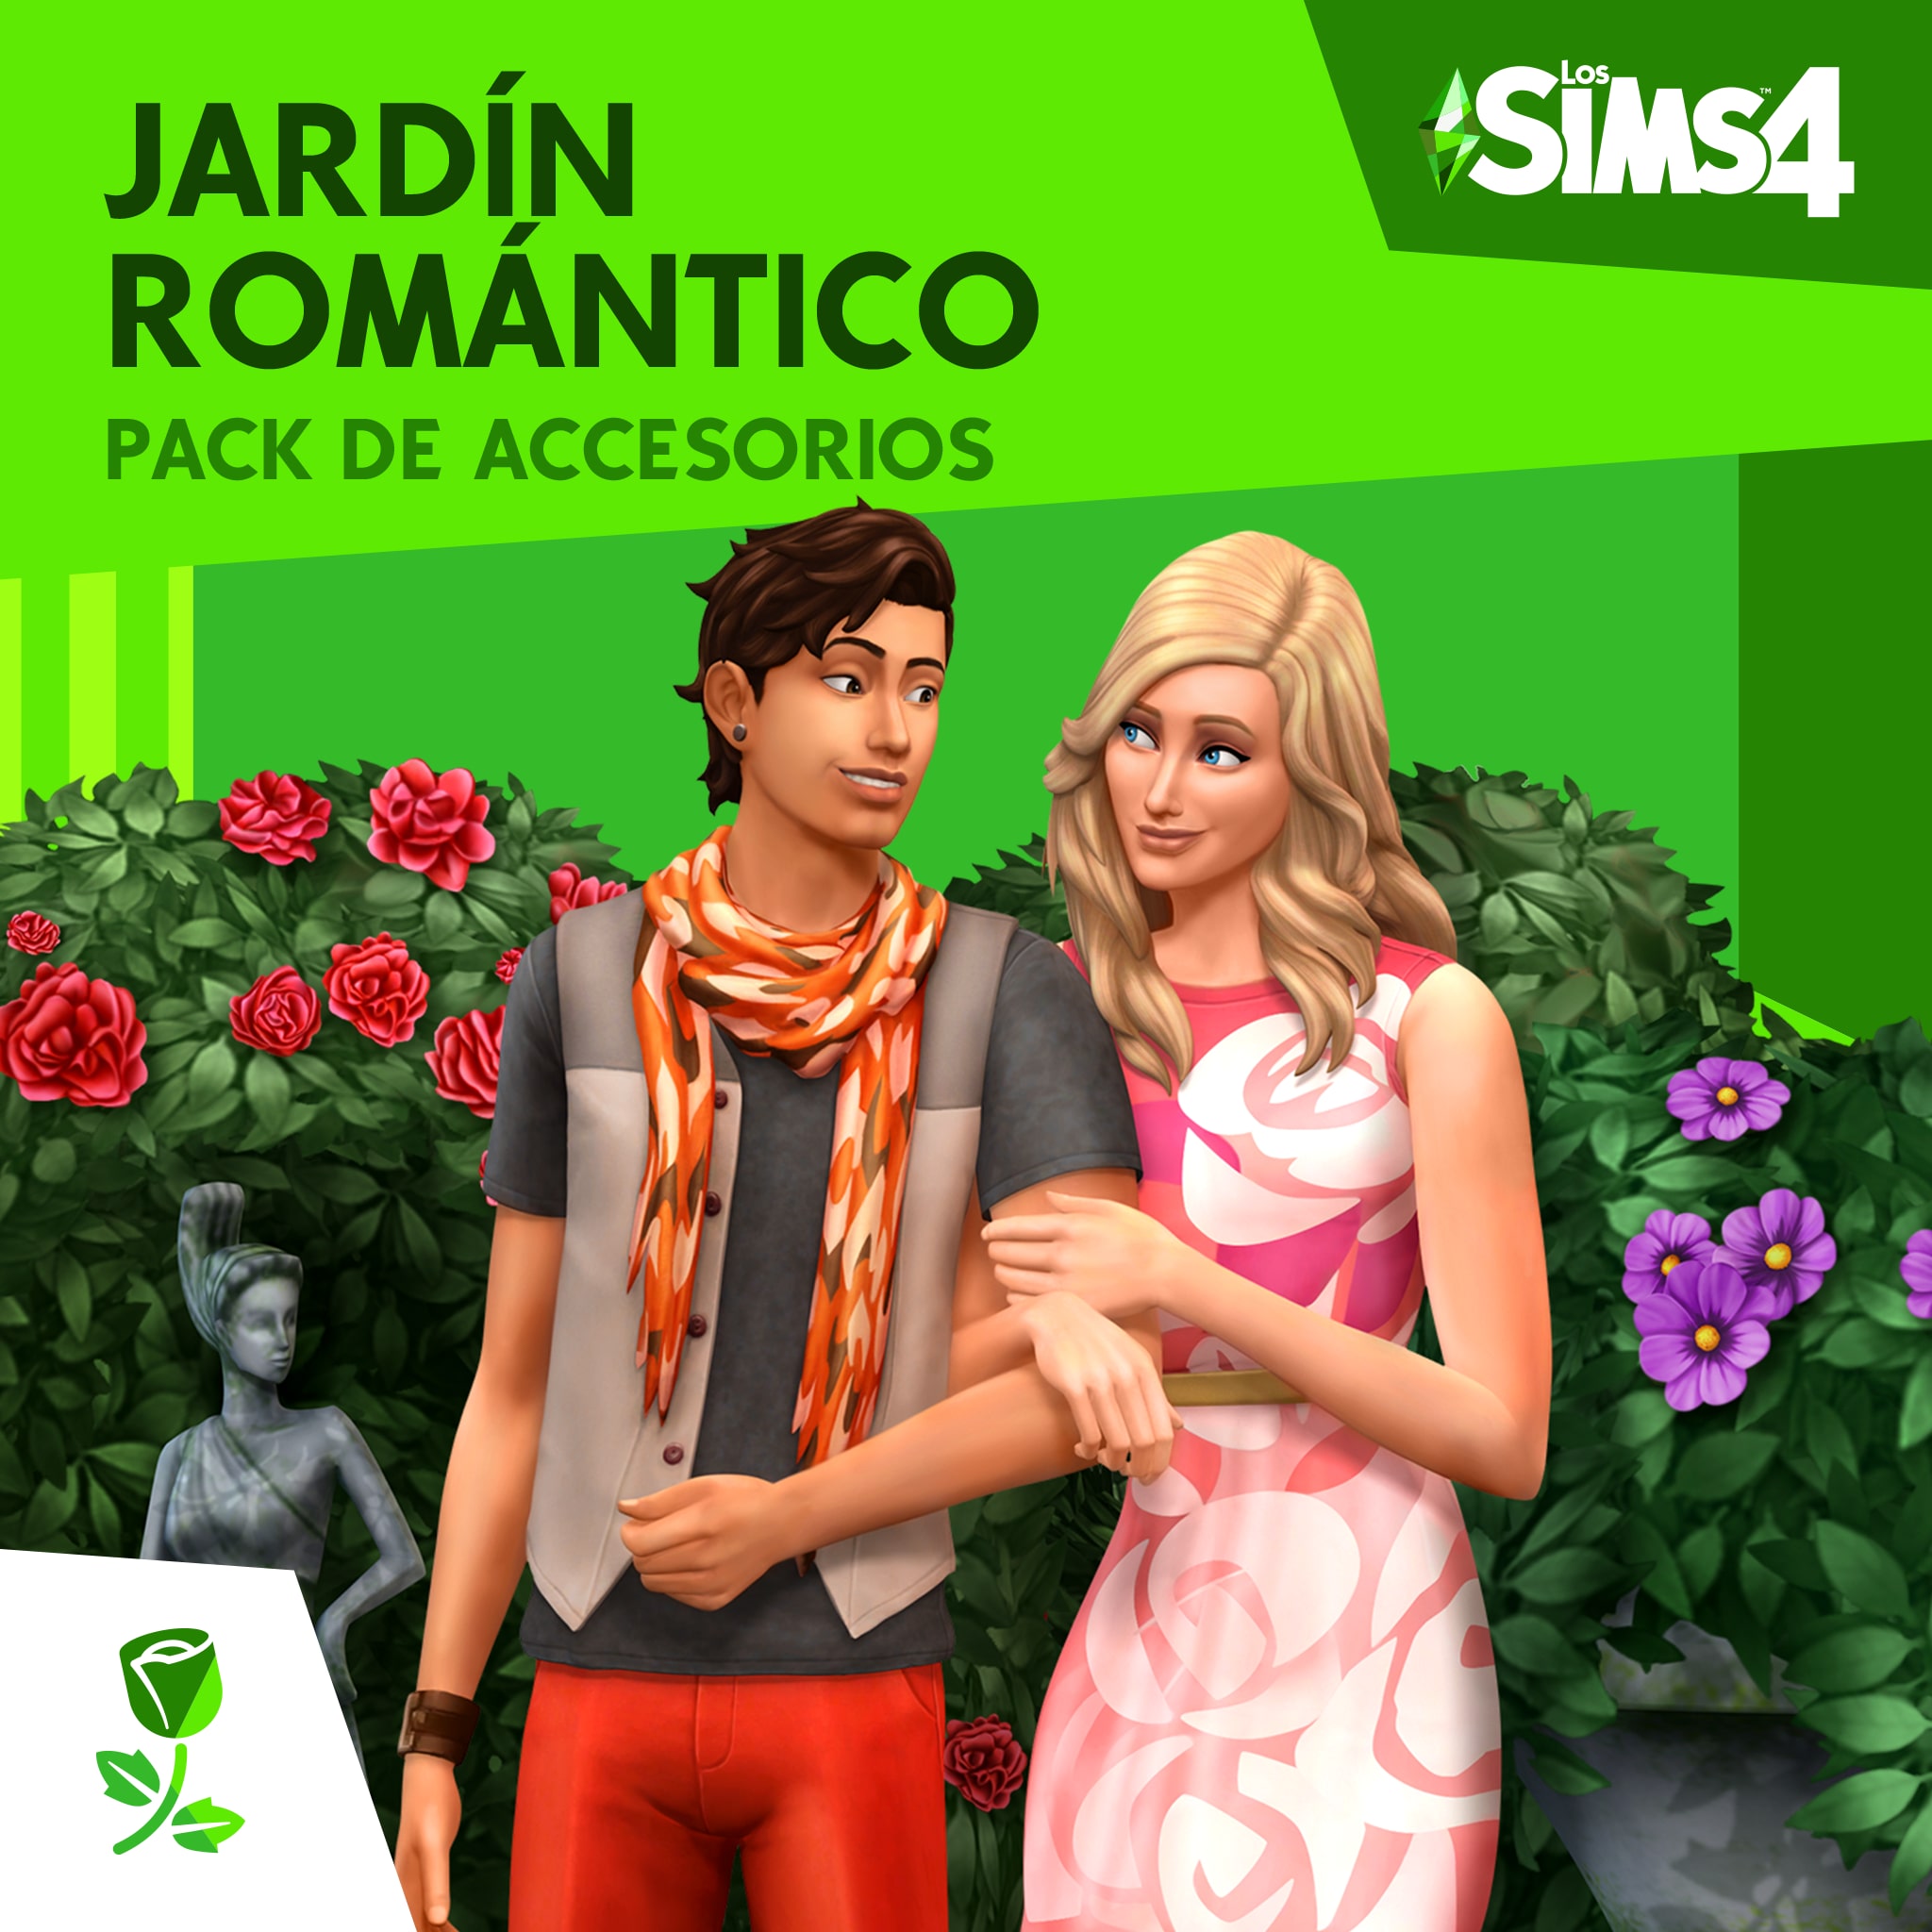 Los Sims™ 4 Jardín Romántico Pack de Accesorios